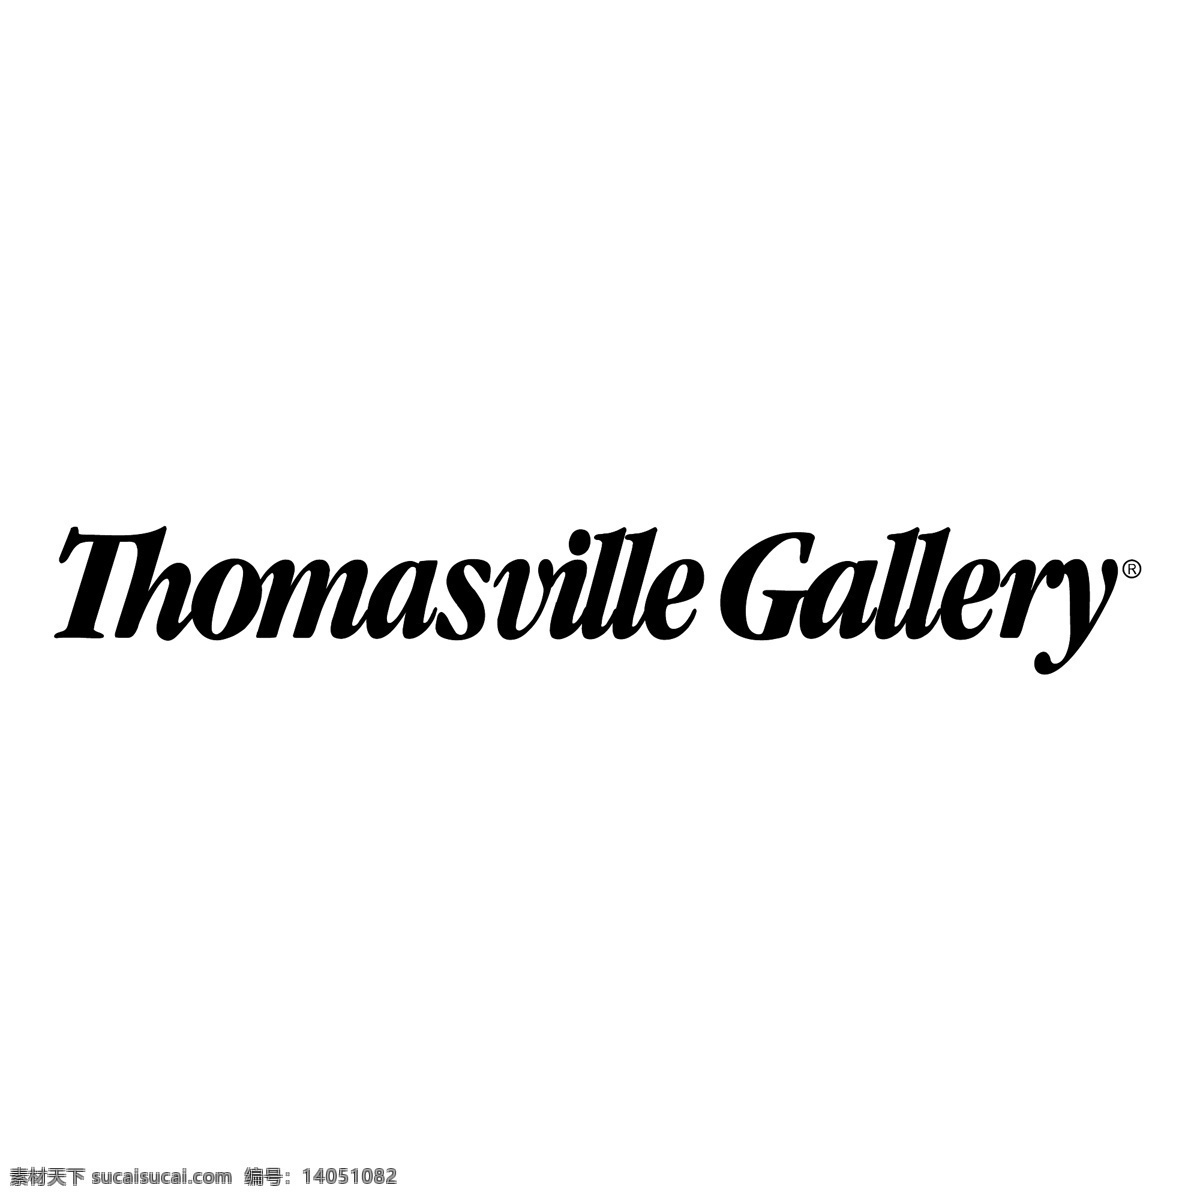 画廊 矢量图 托马斯维尔 托马 斯维尔 美术馆 矢量 图形 艺术 免费 画廊自由向量 向量的画廊 矢量图形库